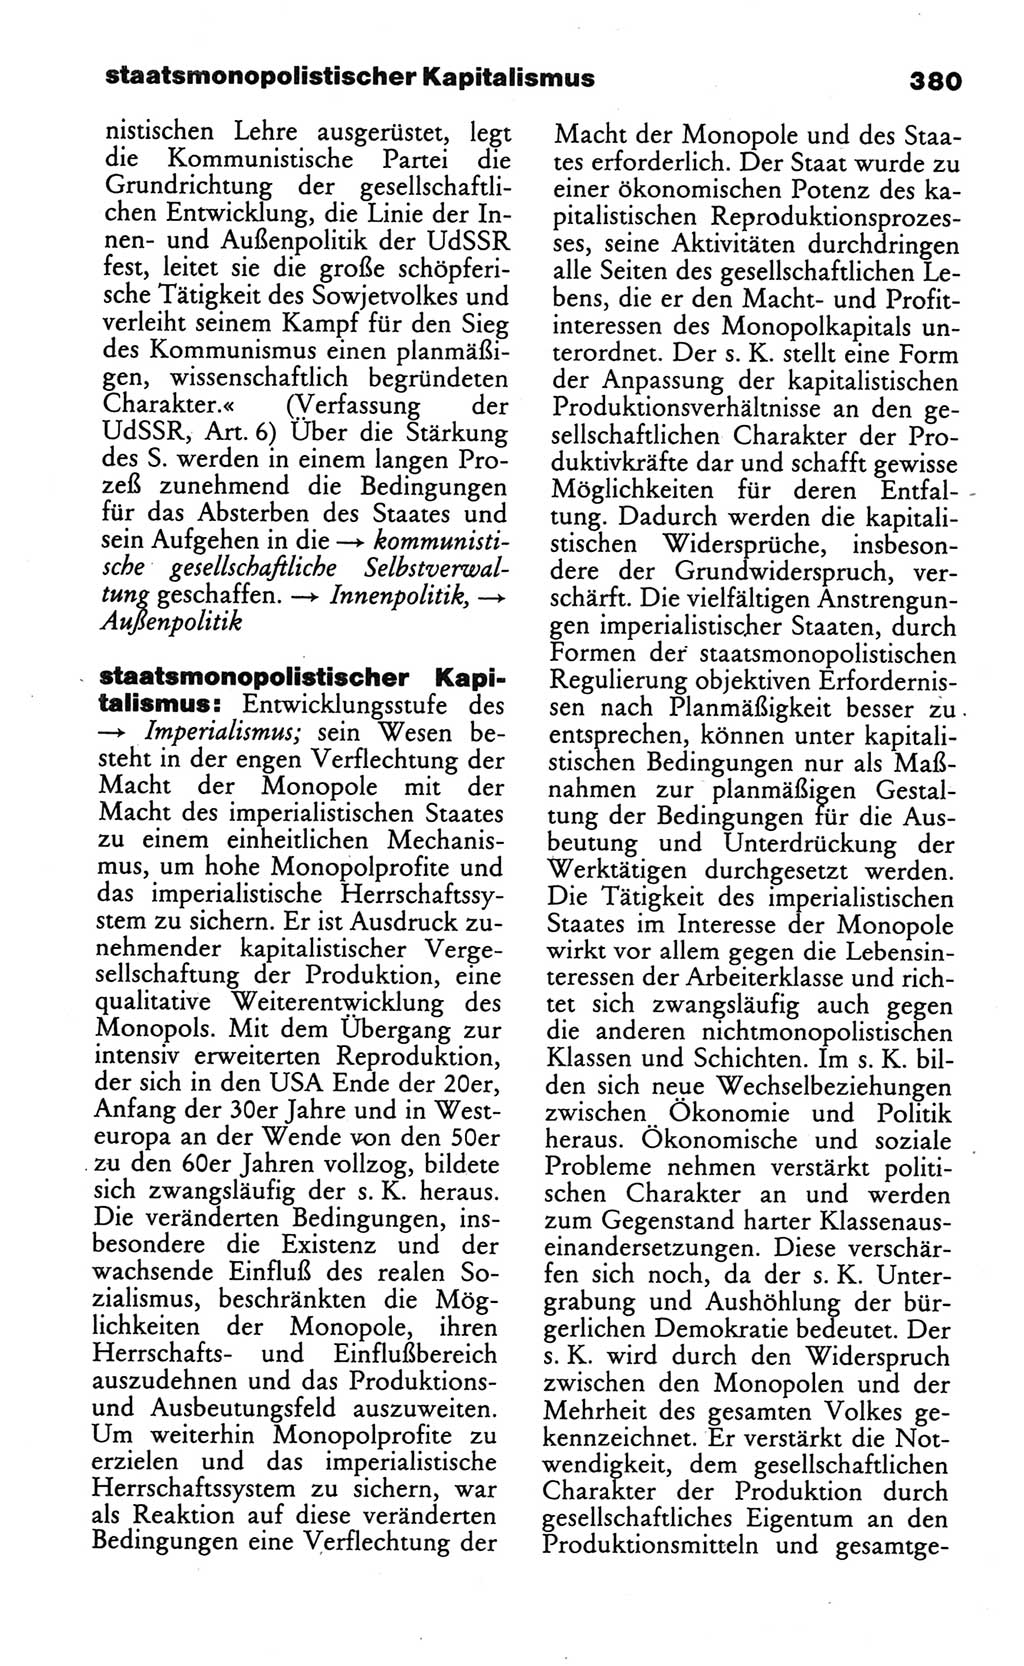 Wörterbuch des wissenschaftlichen Kommunismus [Deutsche Demokratische Republik (DDR)] 1984, Seite 380 (Wb. wiss. Komm. DDR 1984, S. 380)